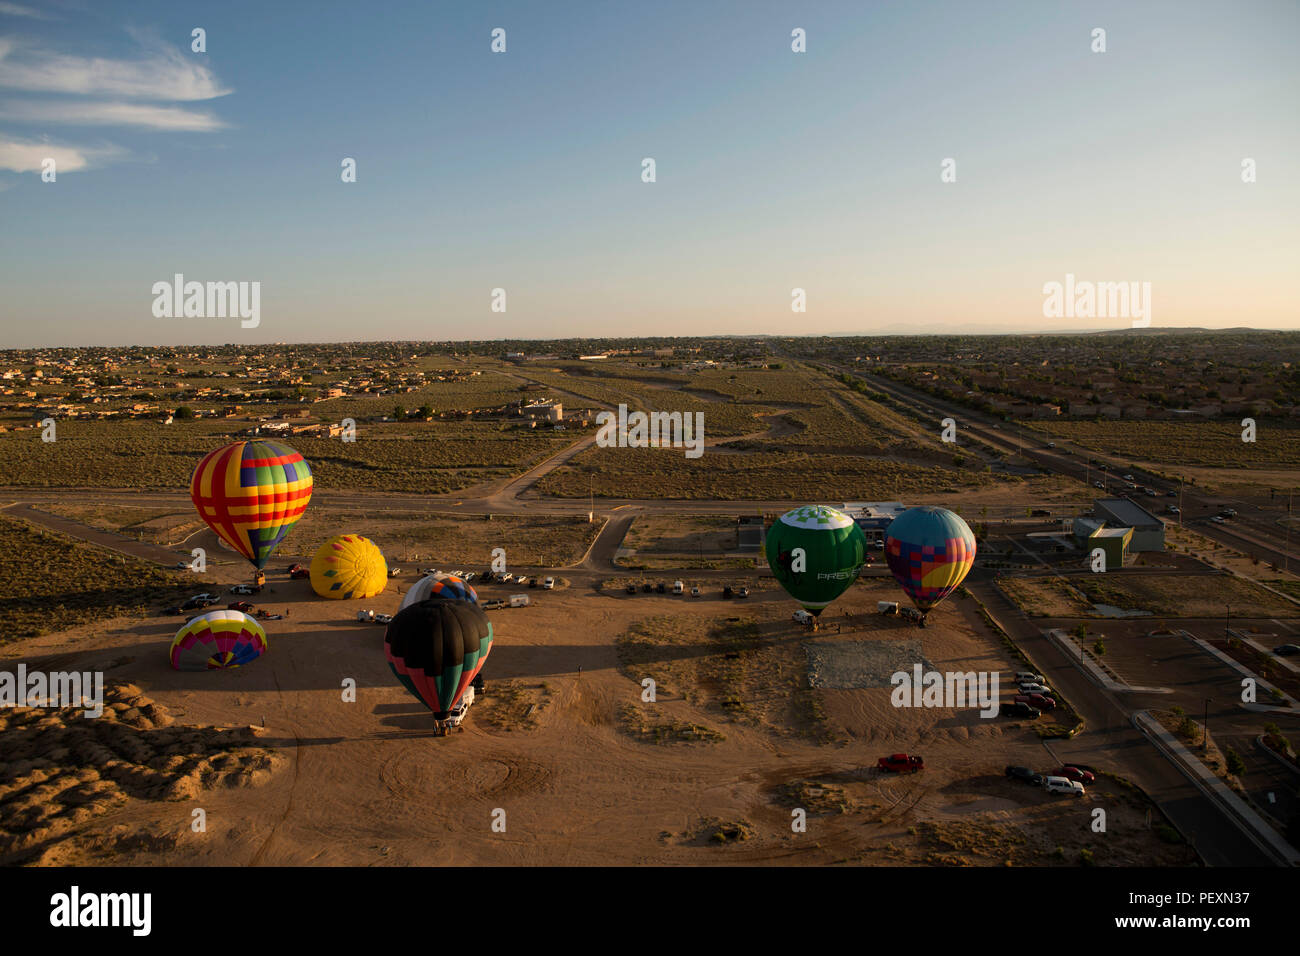 Aerial view of hot air balloons, Albuquerque, New Mexico, USA Stock Photo